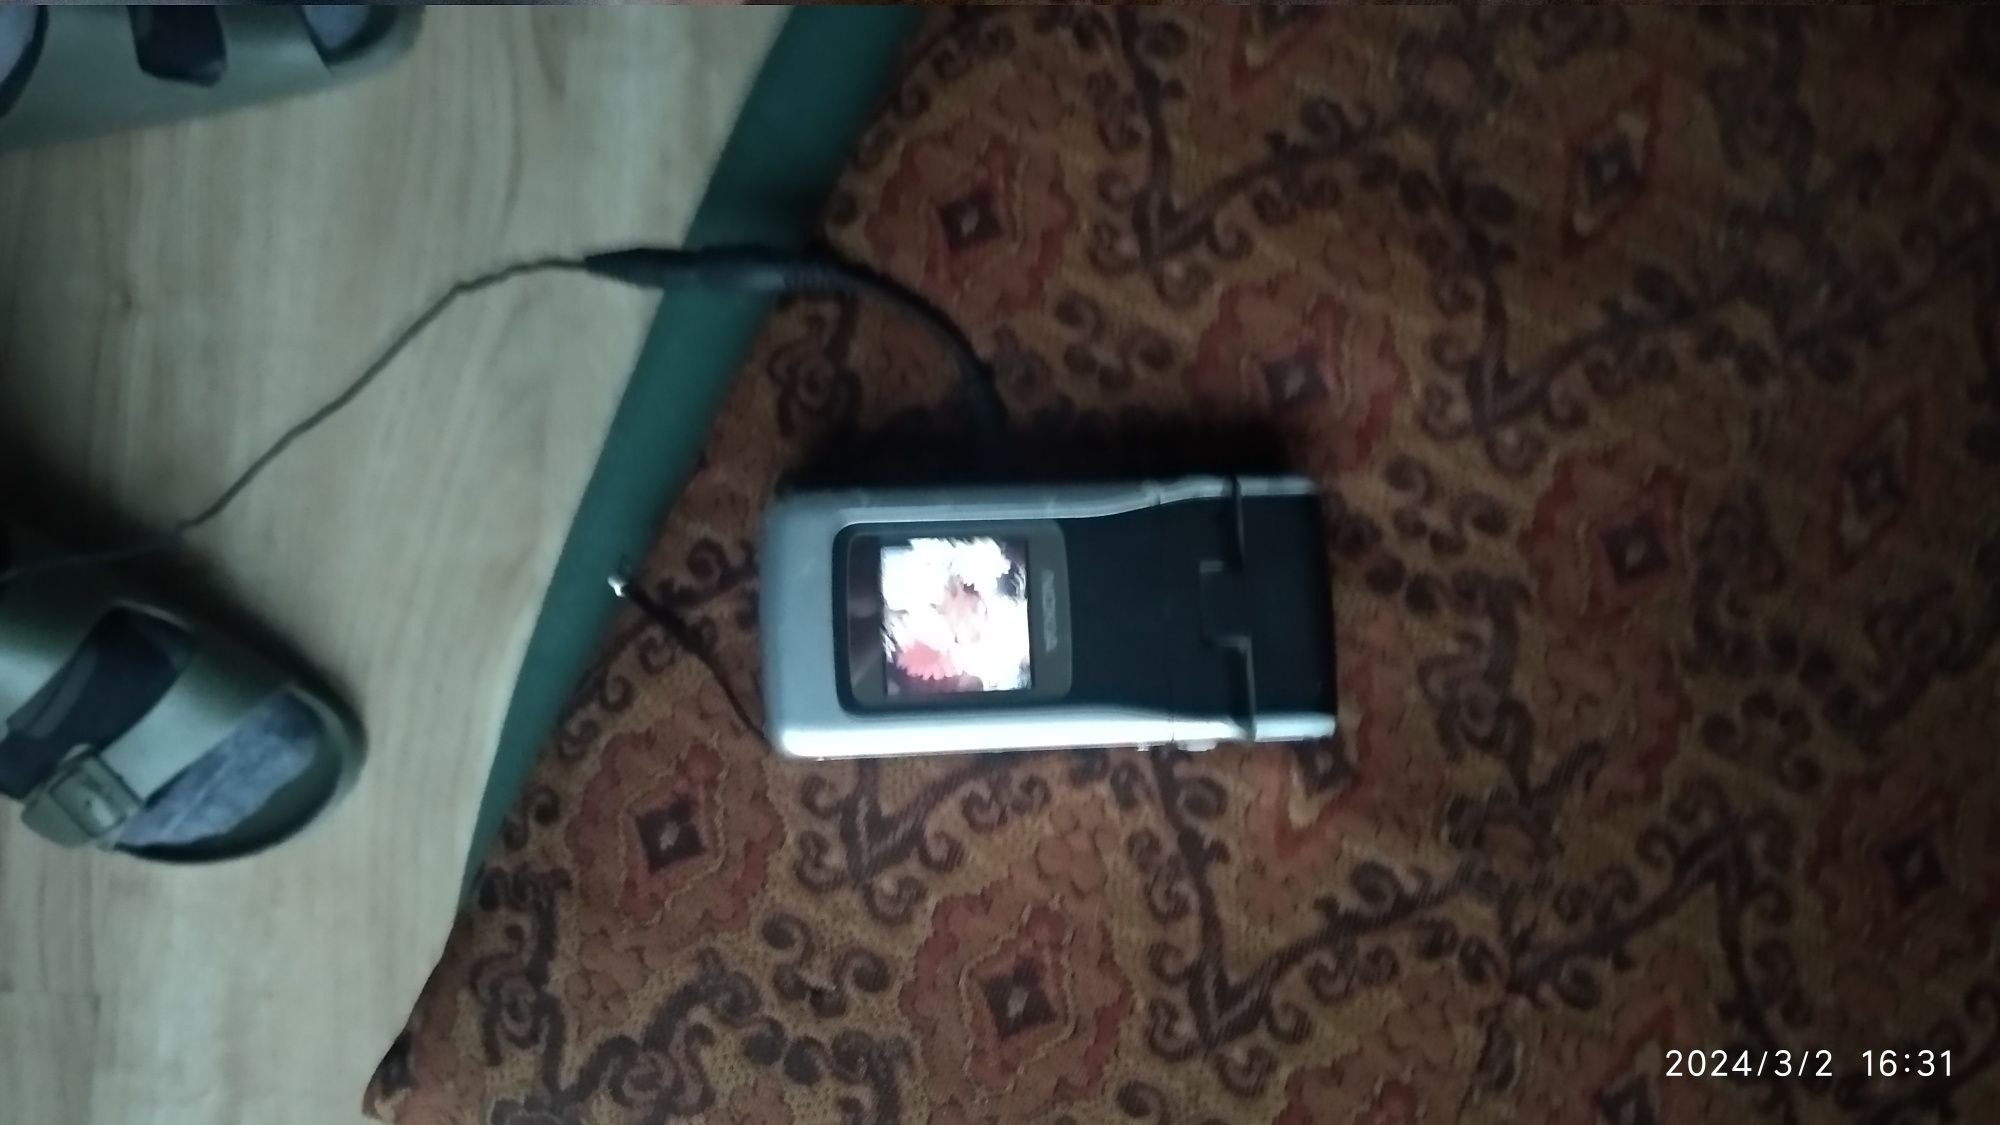 Nokia N90 używana sprawna